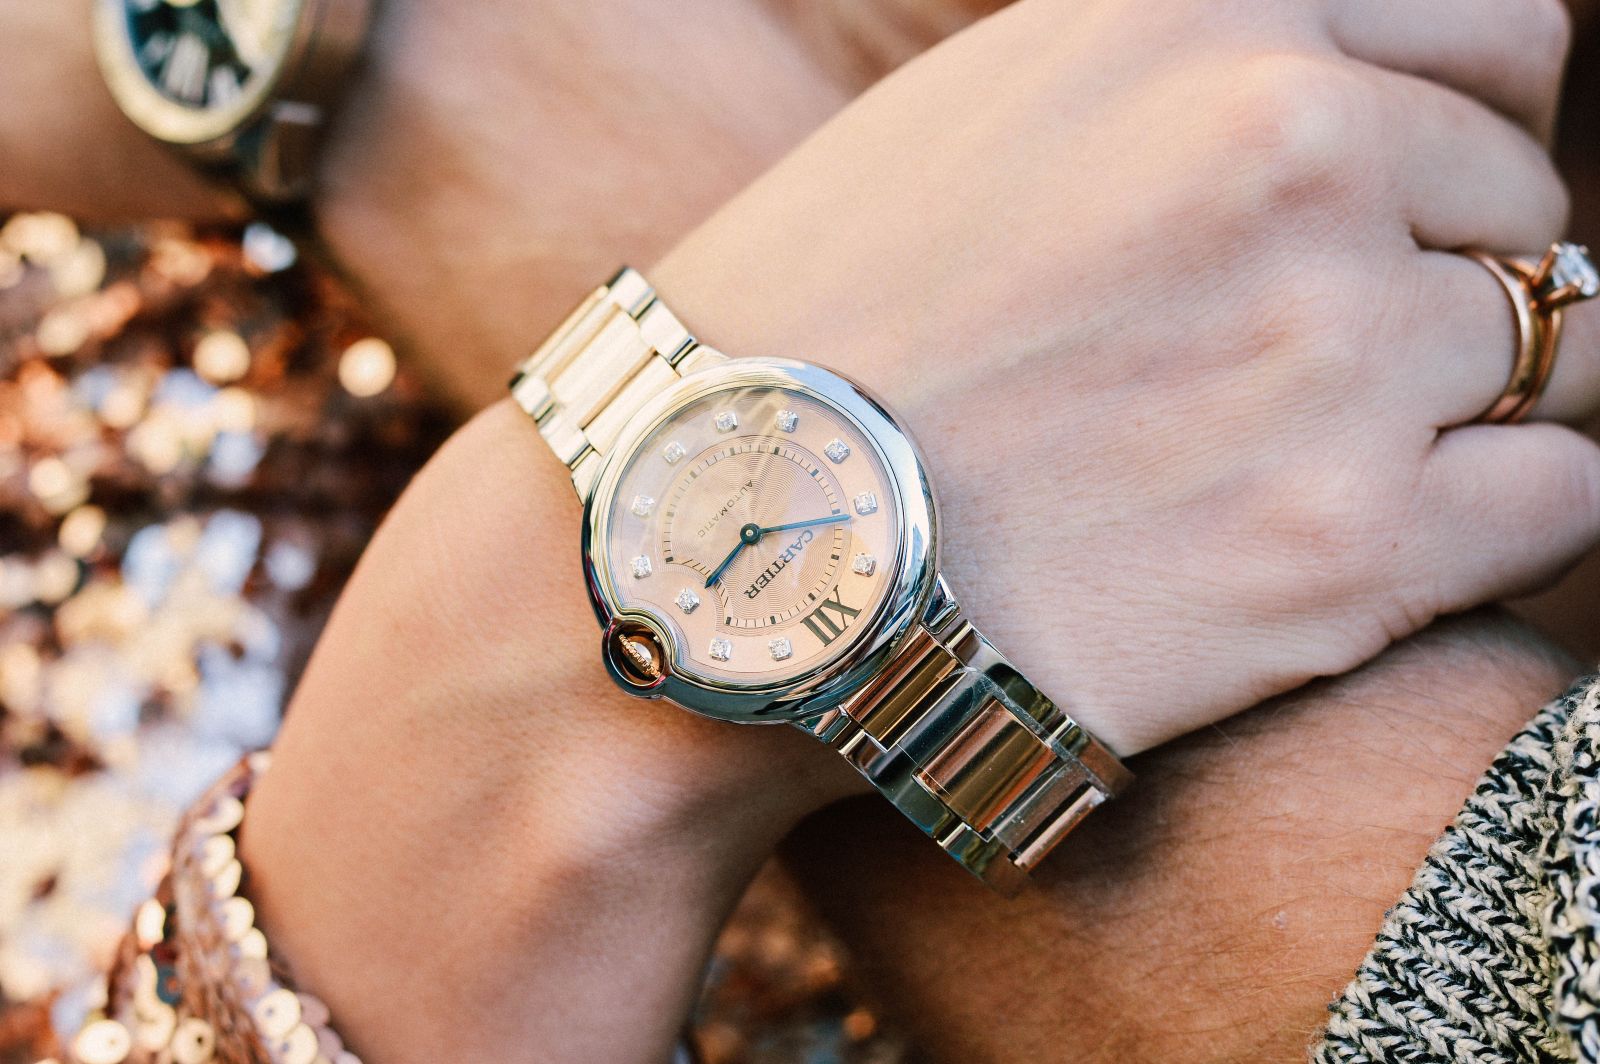 Watch watches как правильно часы. Стильные наручные часы. Наручные часы на руке. Часы на руку женские. Часы мужские и женские.